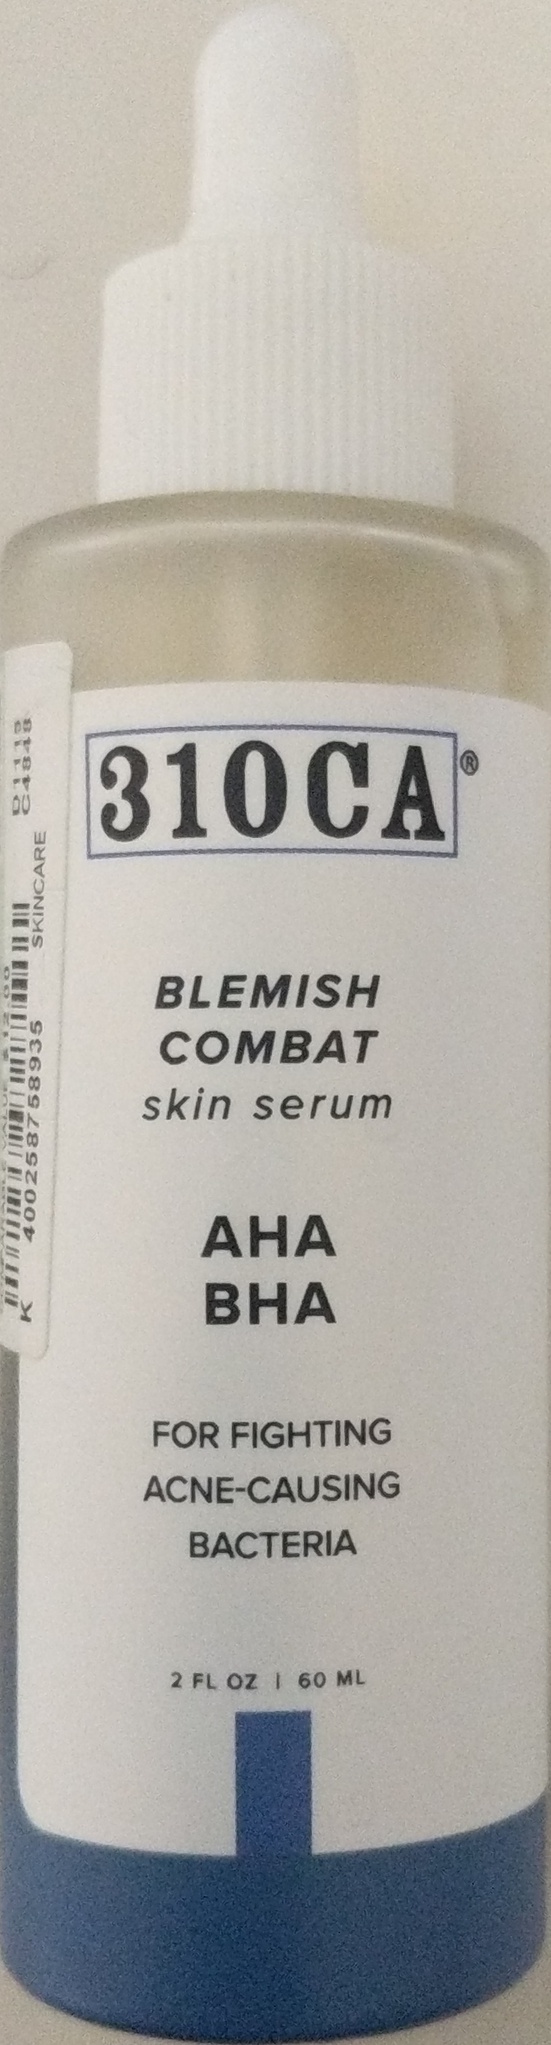 310 CA Blemish Combat